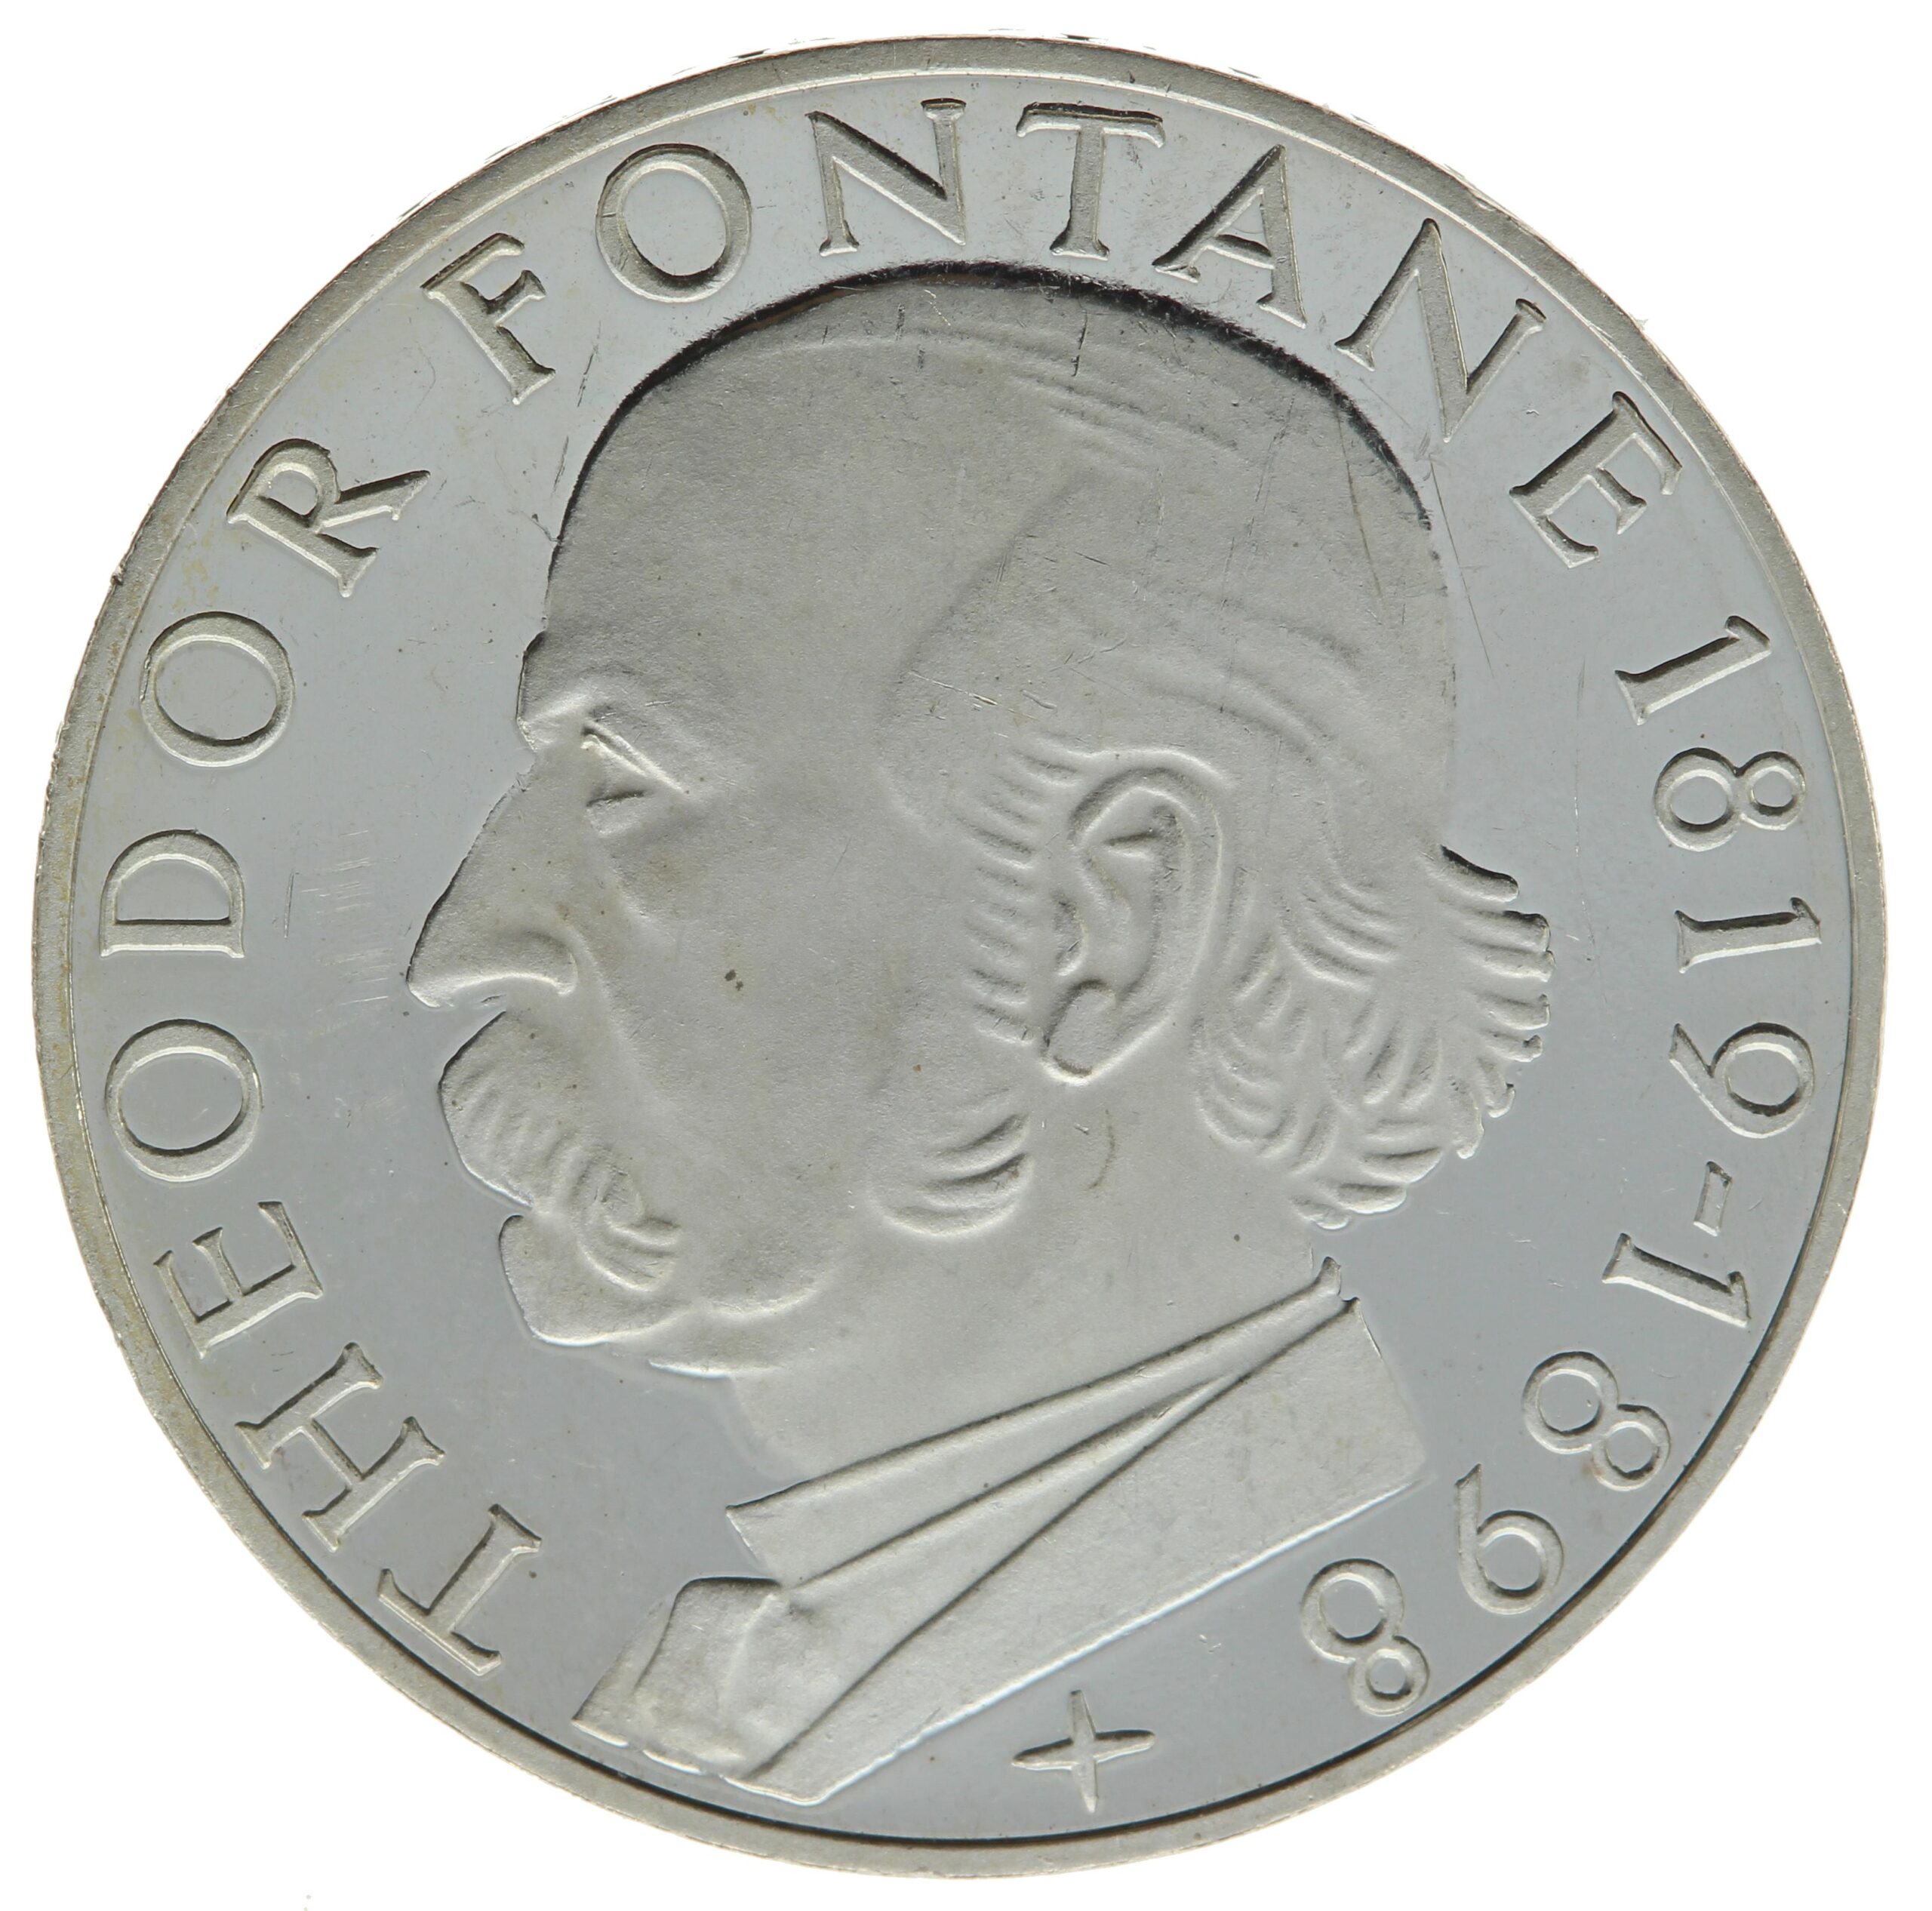 DE 5 Deutsche Mark 1969 G